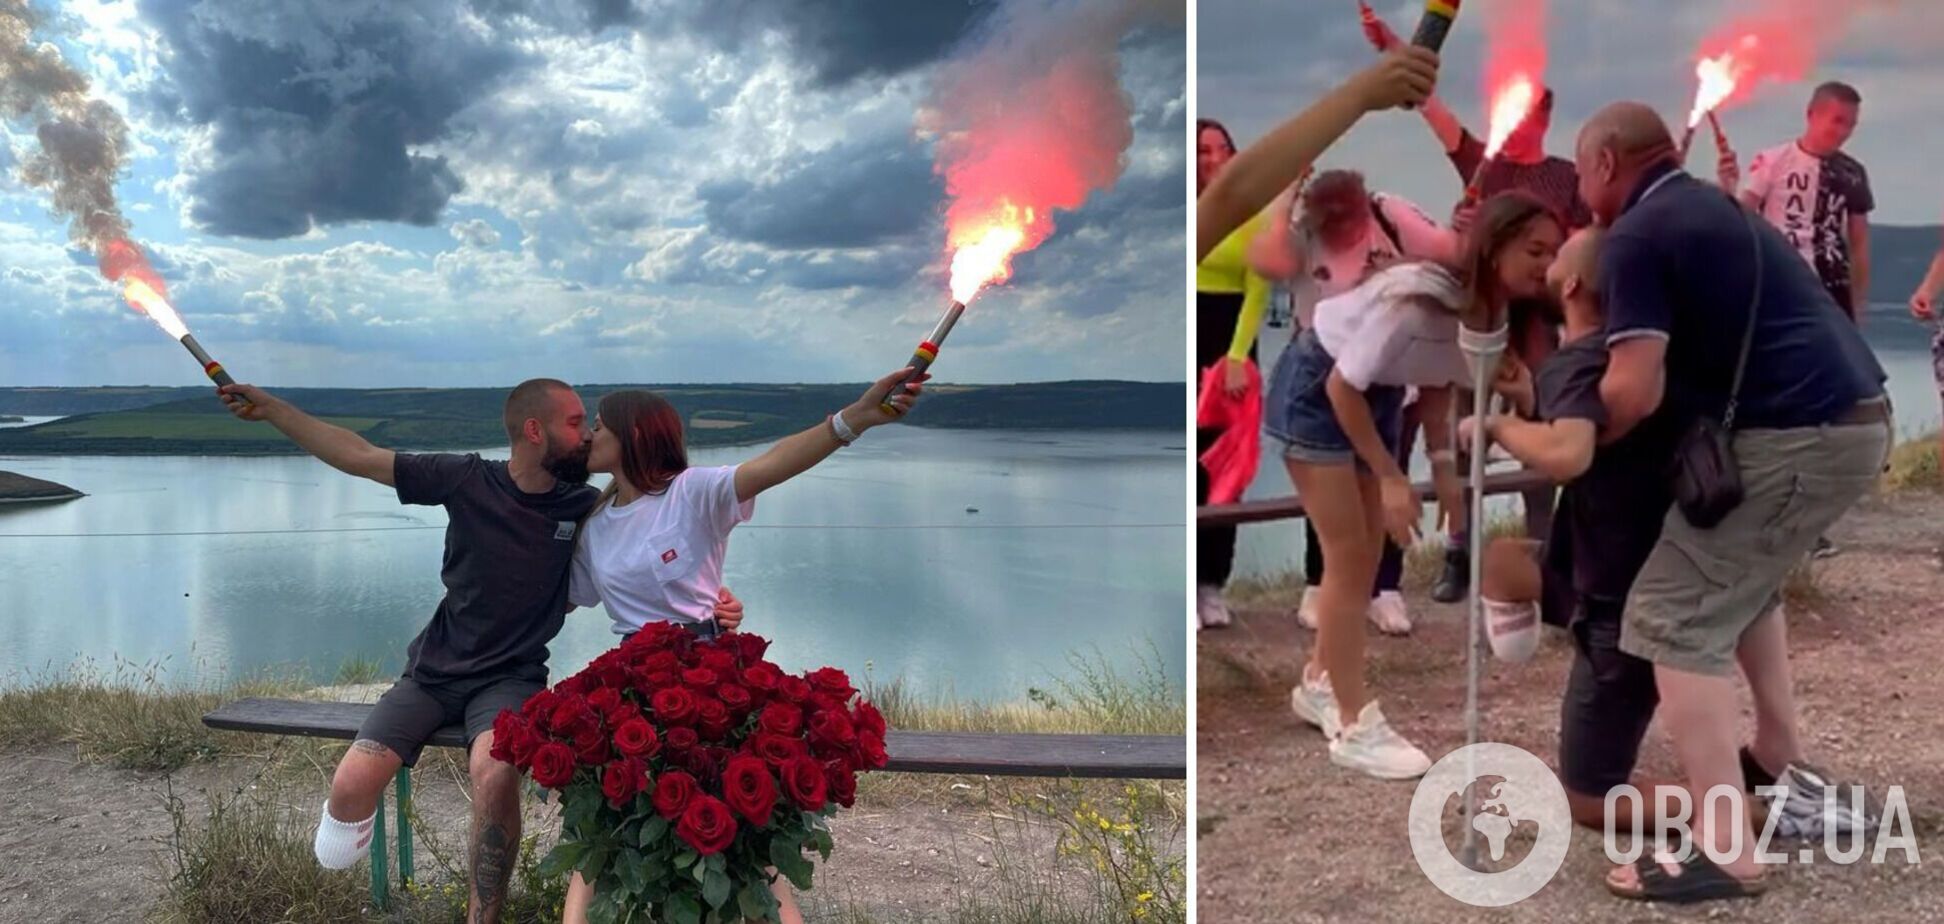 Український воїн, який втратив ногу на війні, зробив пропозицію коханій. Відео довело мережу до сліз